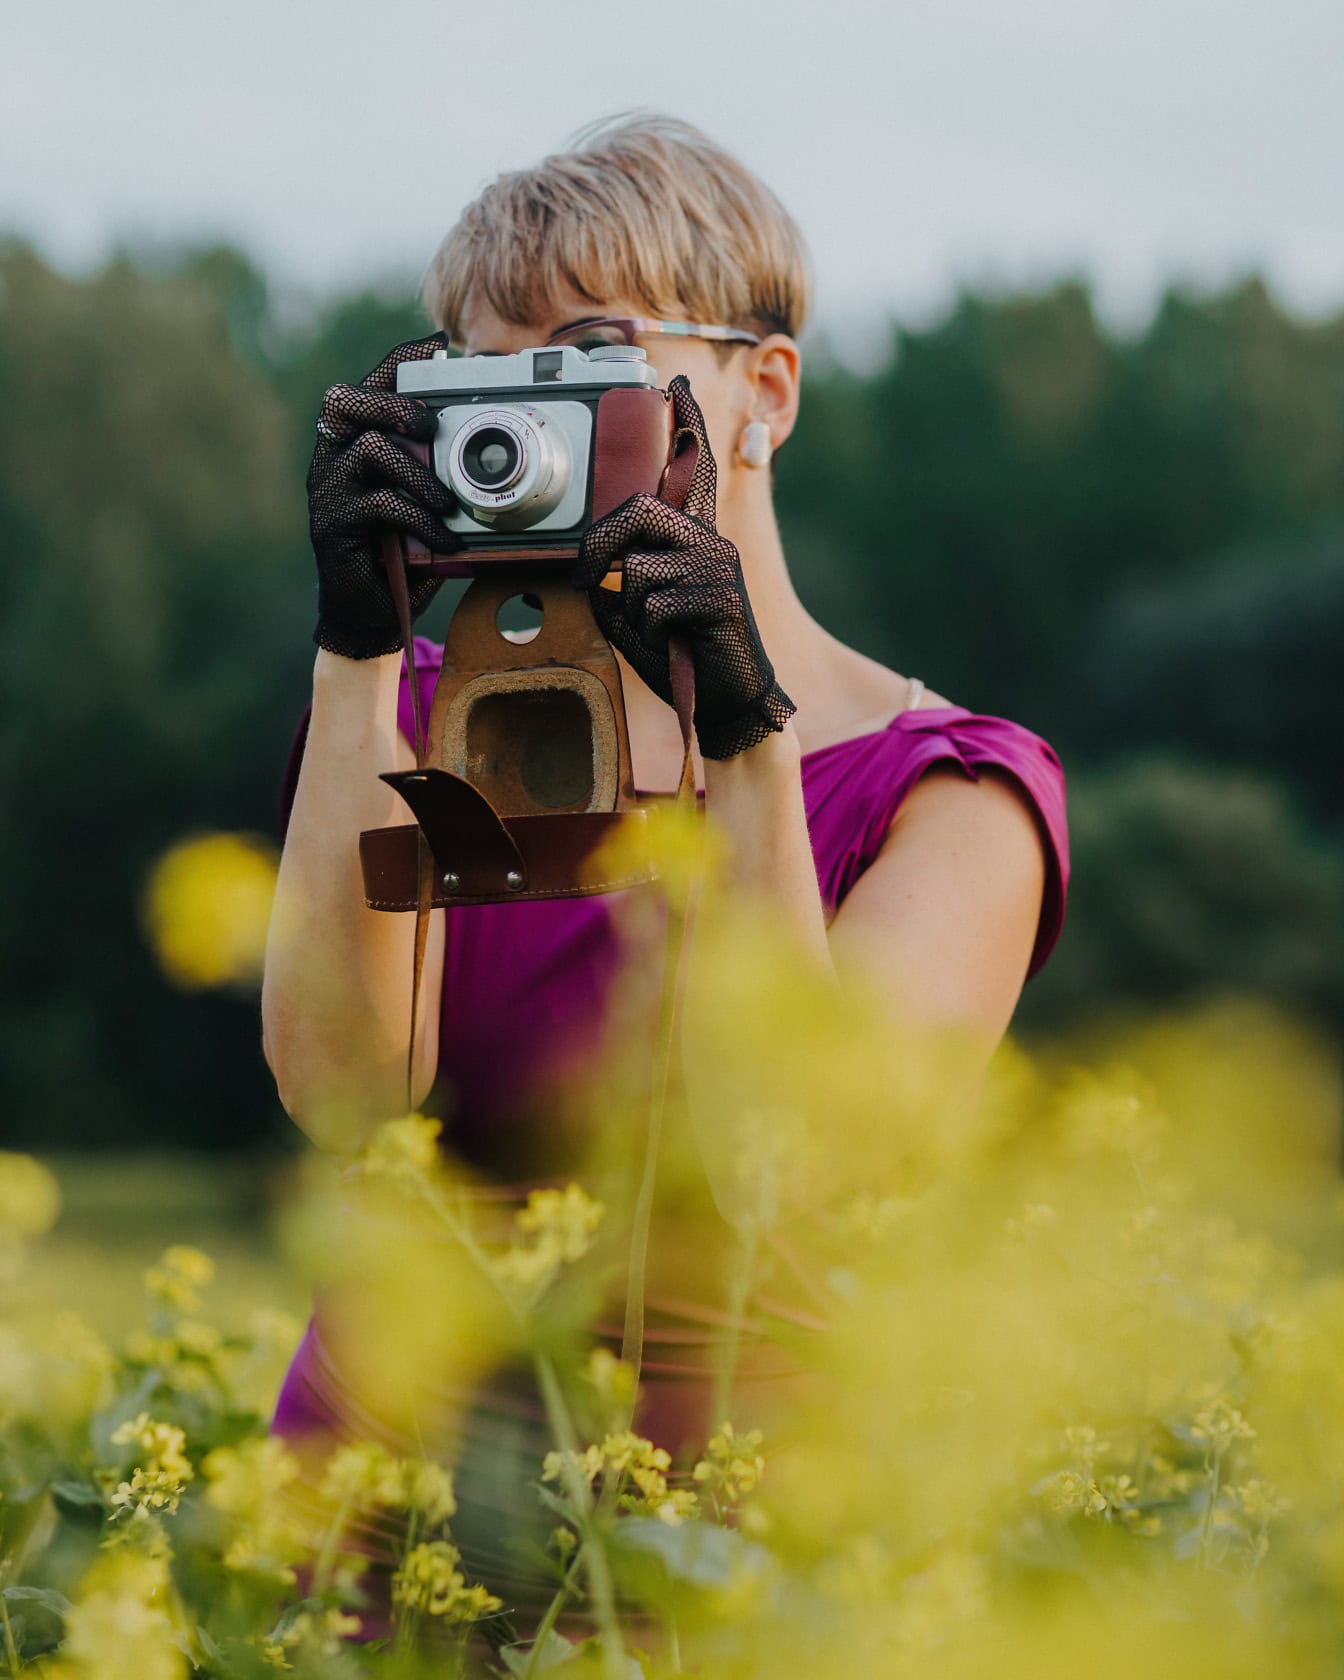 花畑でレースの手袋をはめ、古いアナログ写真カメラを顔の前にかざす女性写真家のポートレート